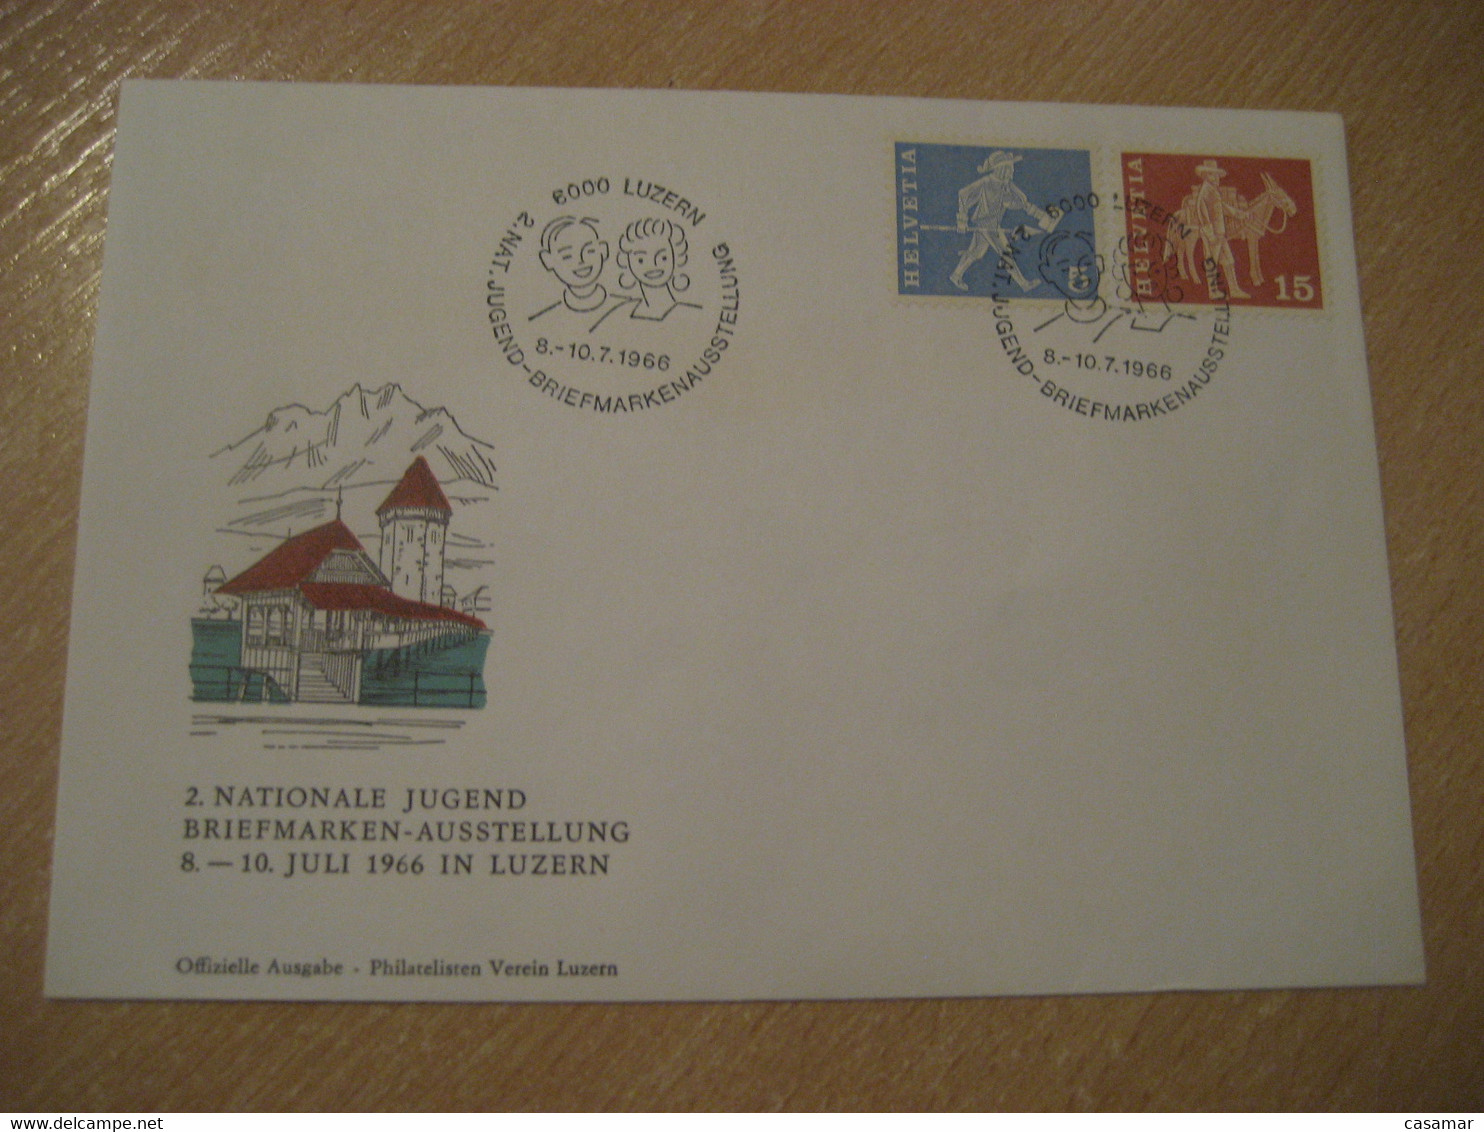 LUZERN 1966 Donkey Donkeys Stamp Jugend Briefmarken Cancel Bridge Water Tower Cover SWITZERLAND Lucerne - Esel